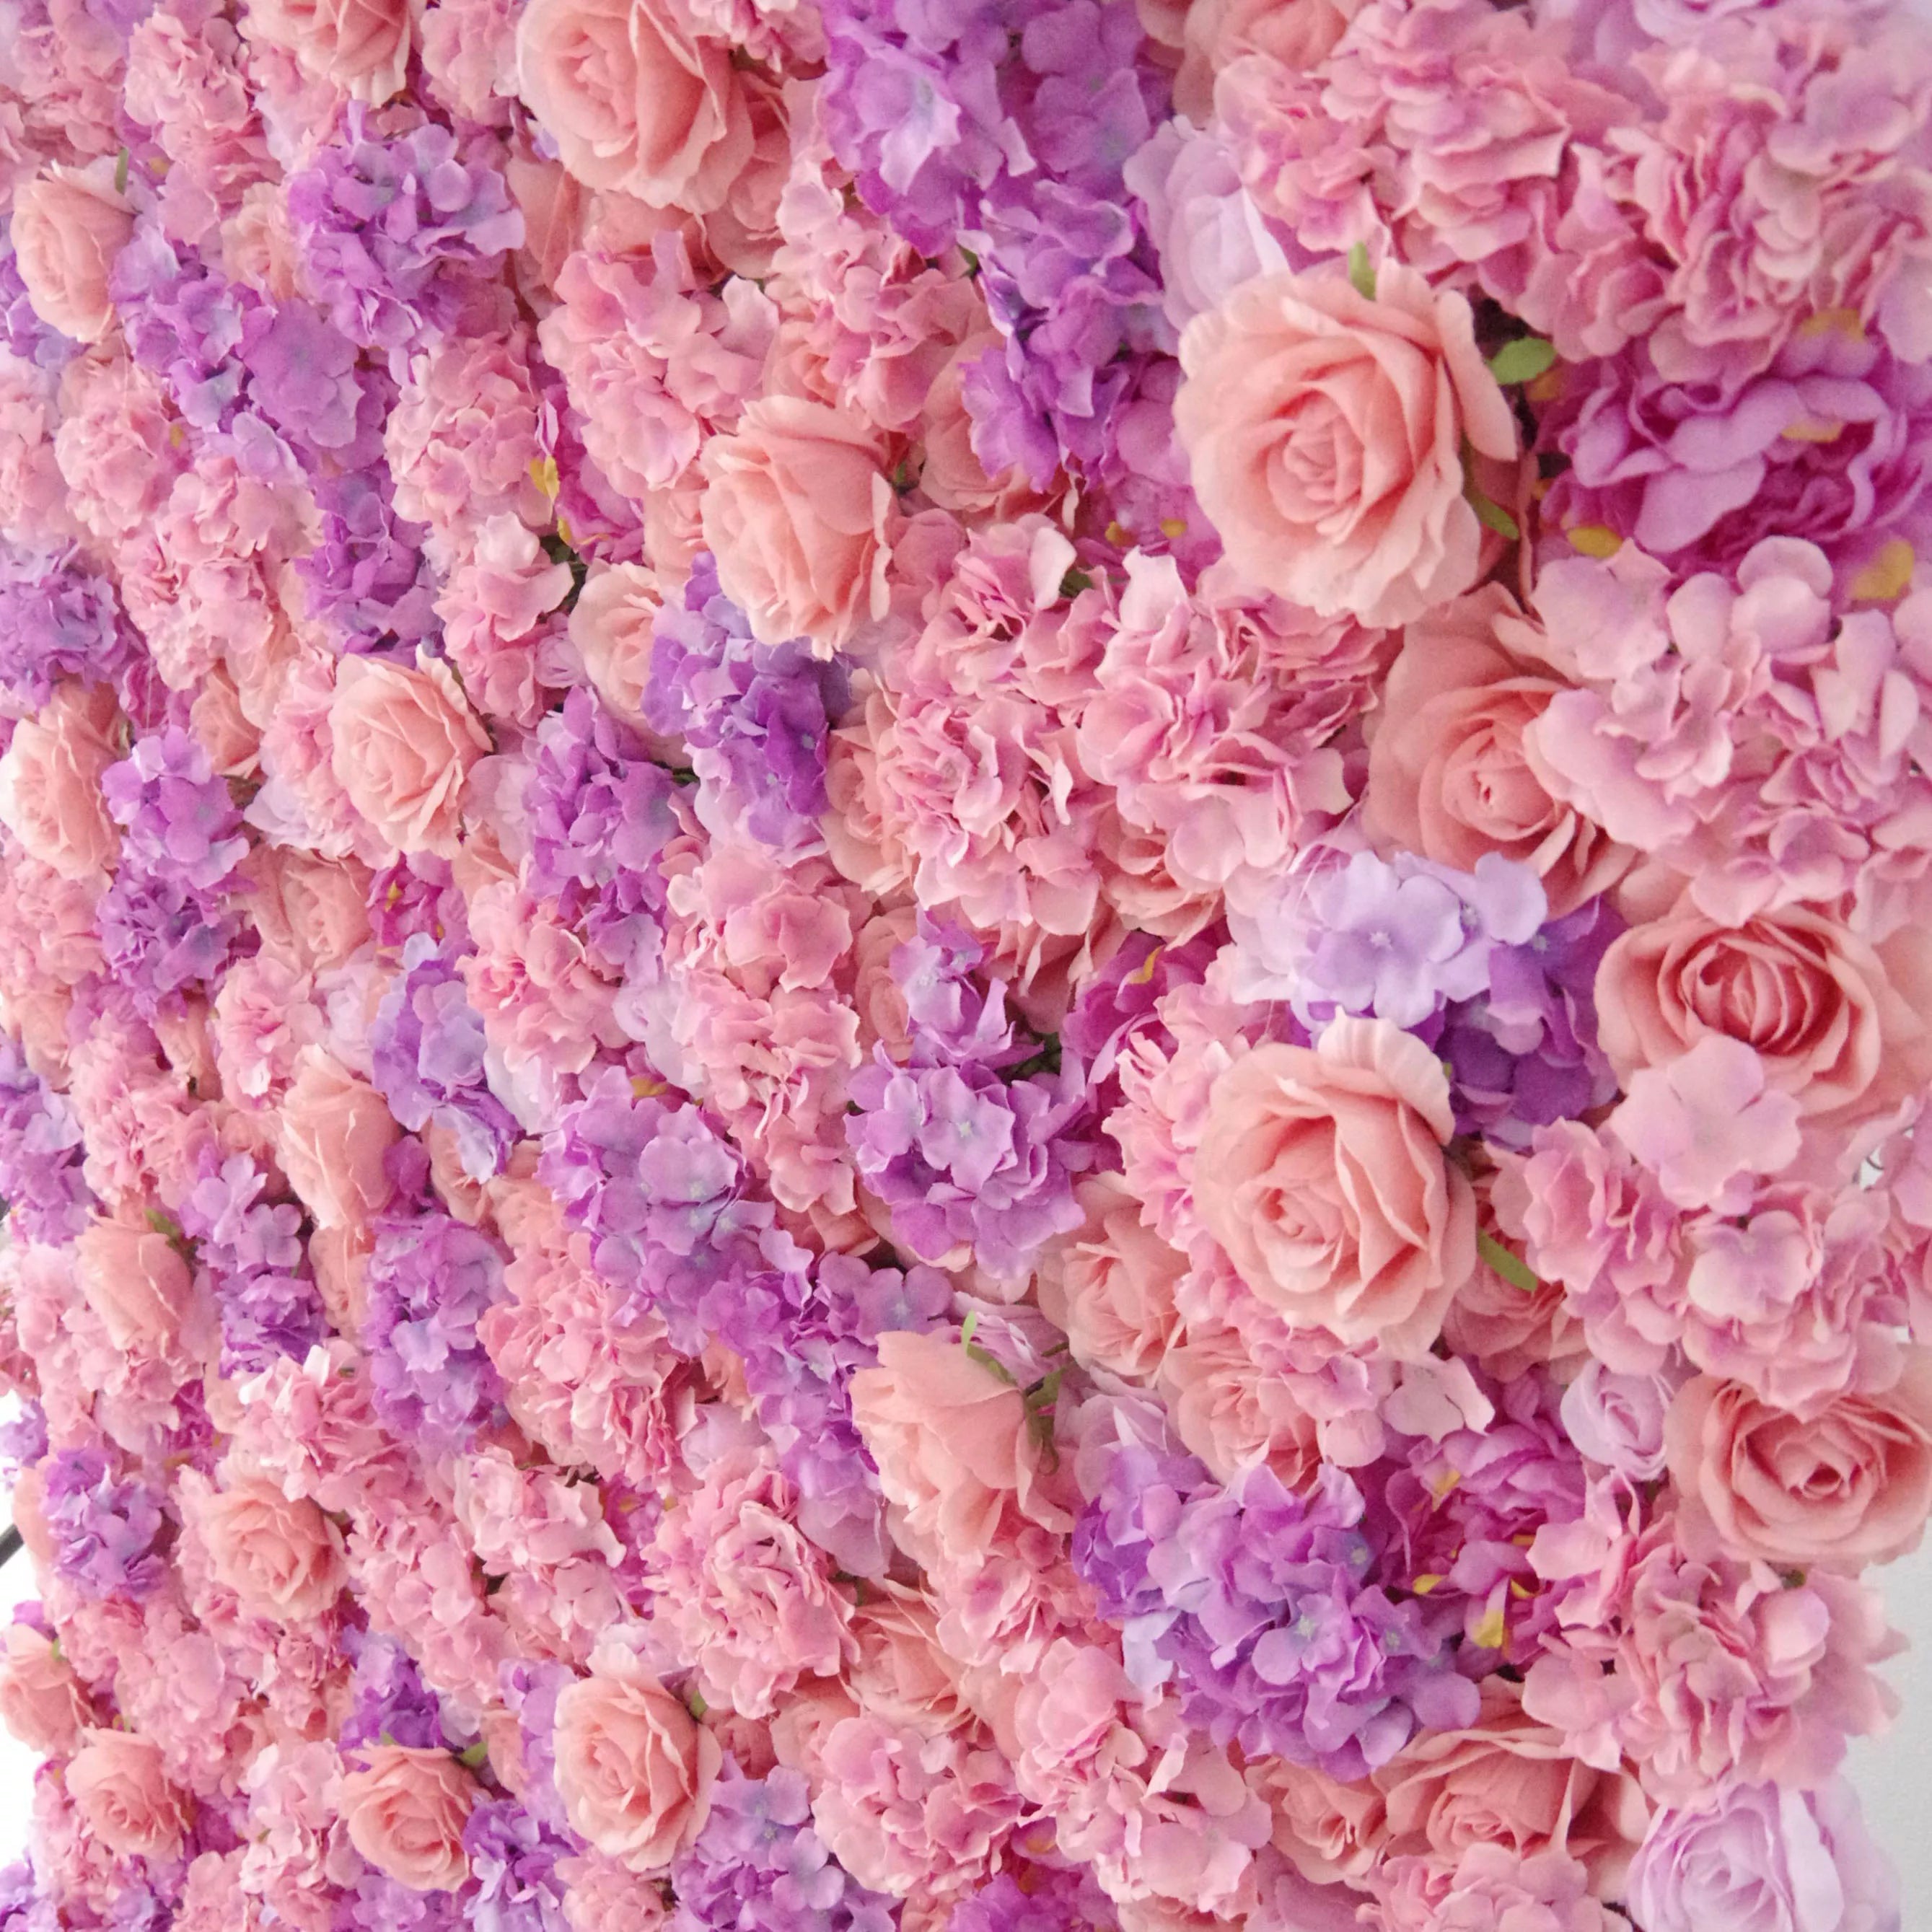 Valar Flowers Roll Up Tissu Rose artificielle et mur de fleurs violettes chaudes Toile de fond de mariage, Décor de fête florale, Photographie d'événement-VF-055 